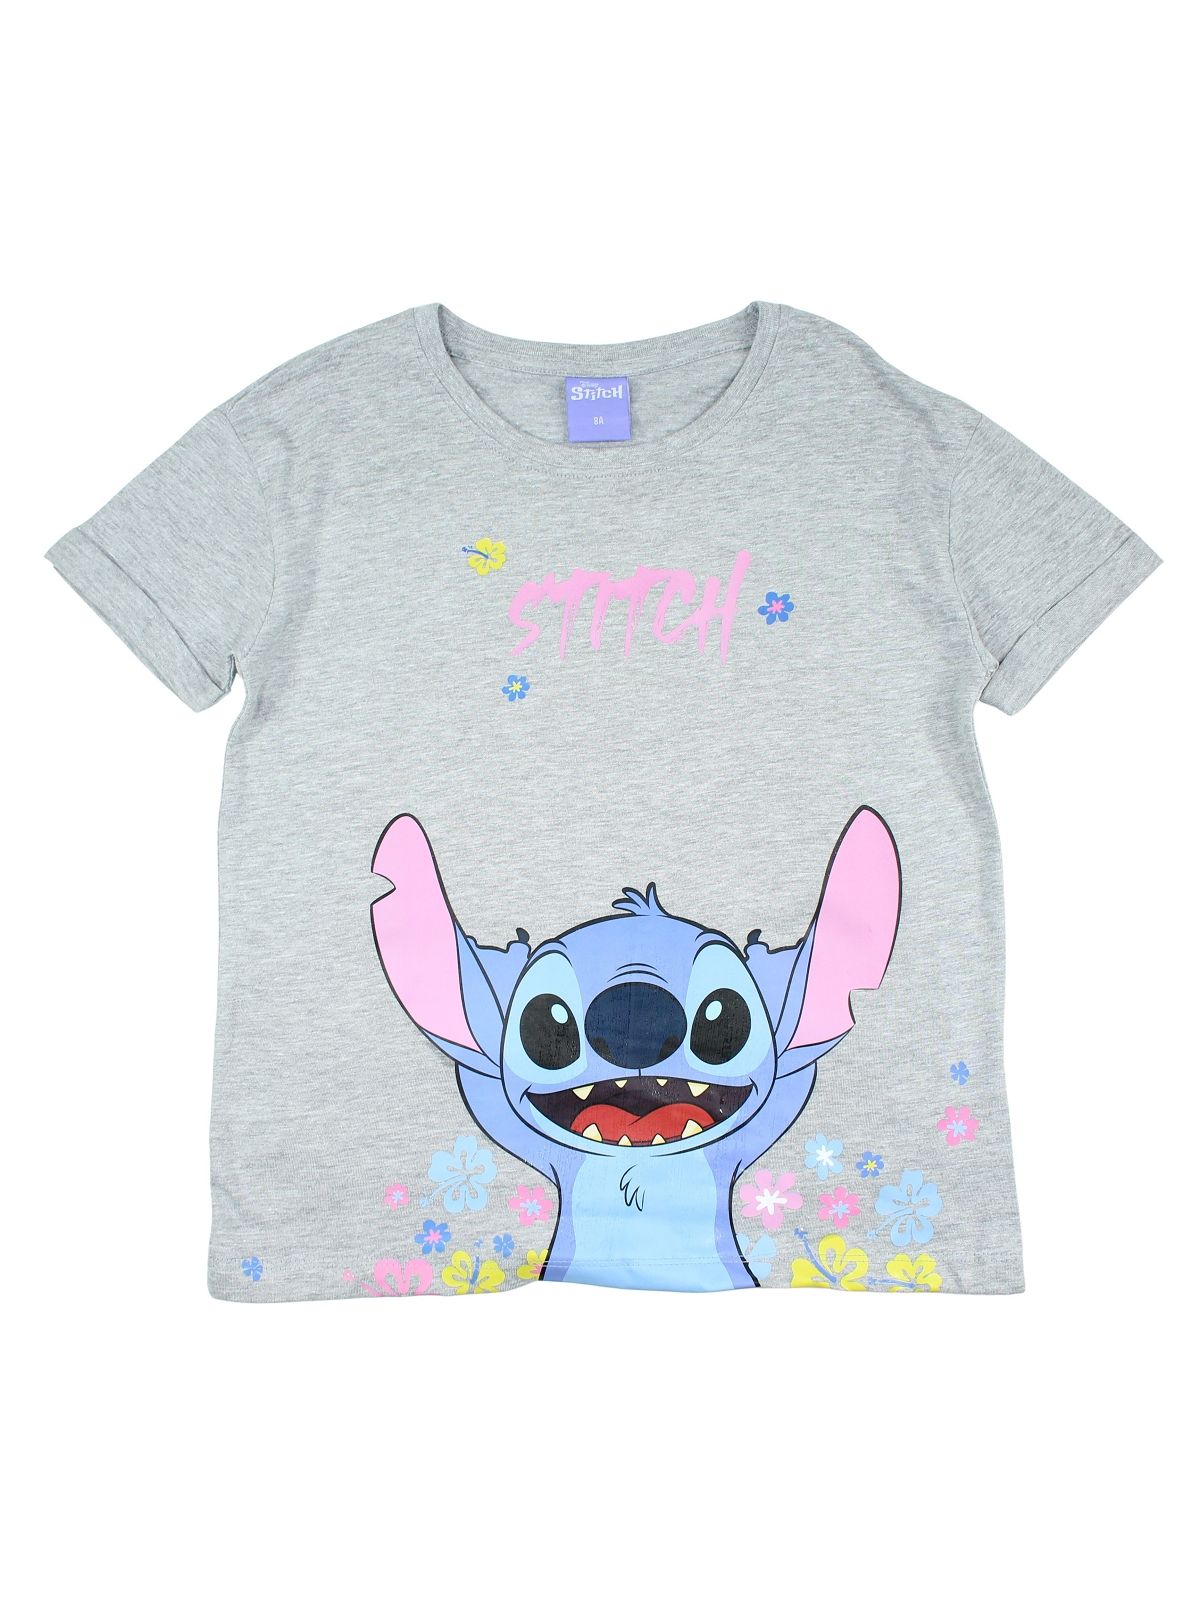 Lilo and Stitch t-shirt.